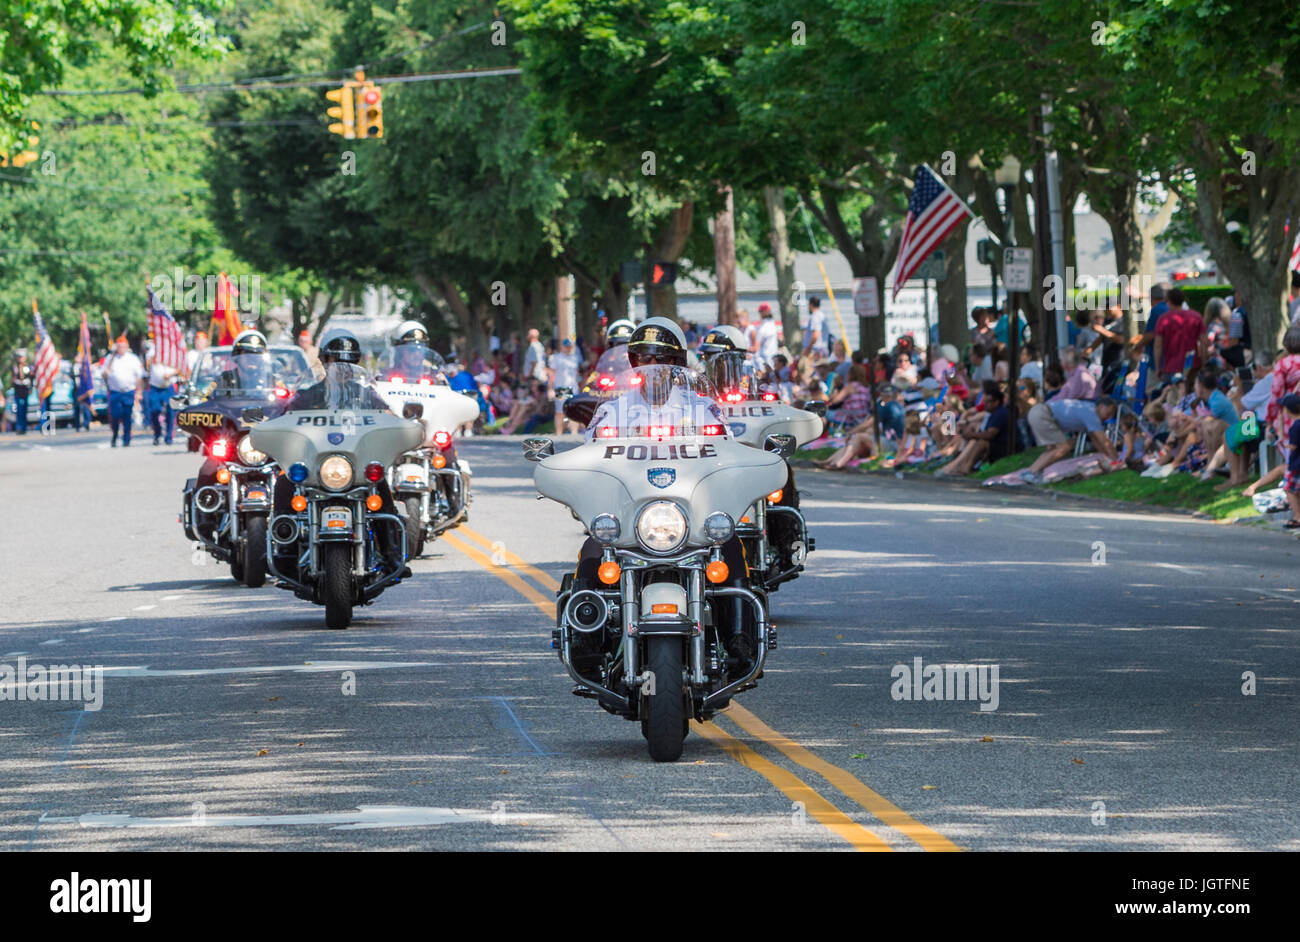 La police moto dans le Southampton, NY parade Banque D'Images